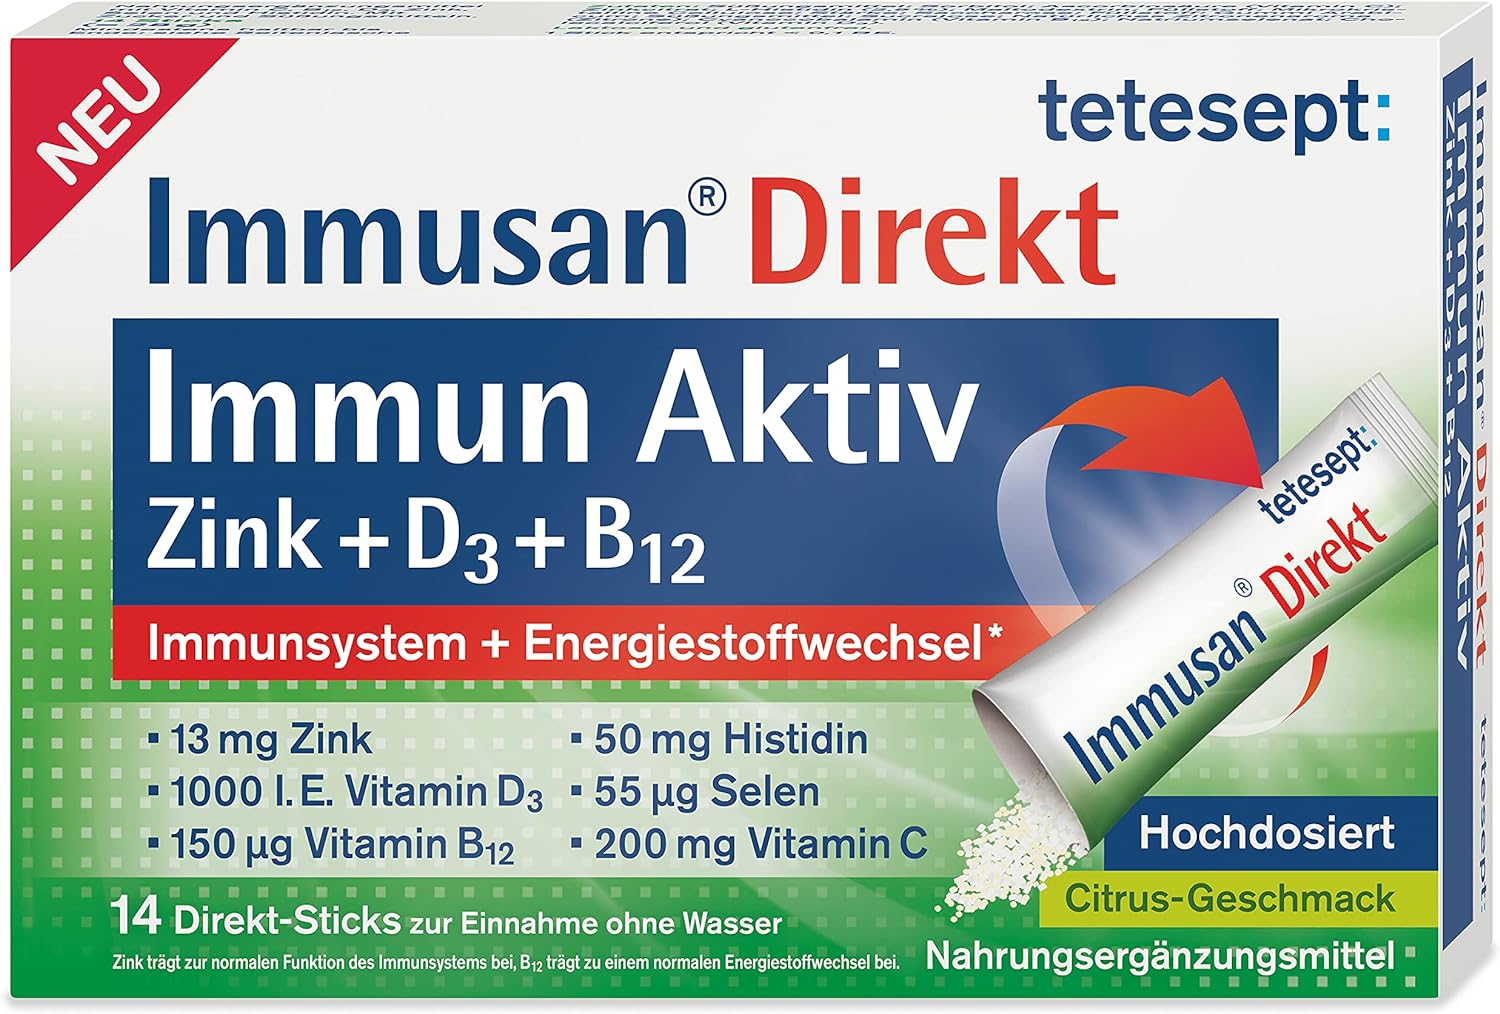 tetesept® Immusan Direct Immune Active Zinc + D3 + B12